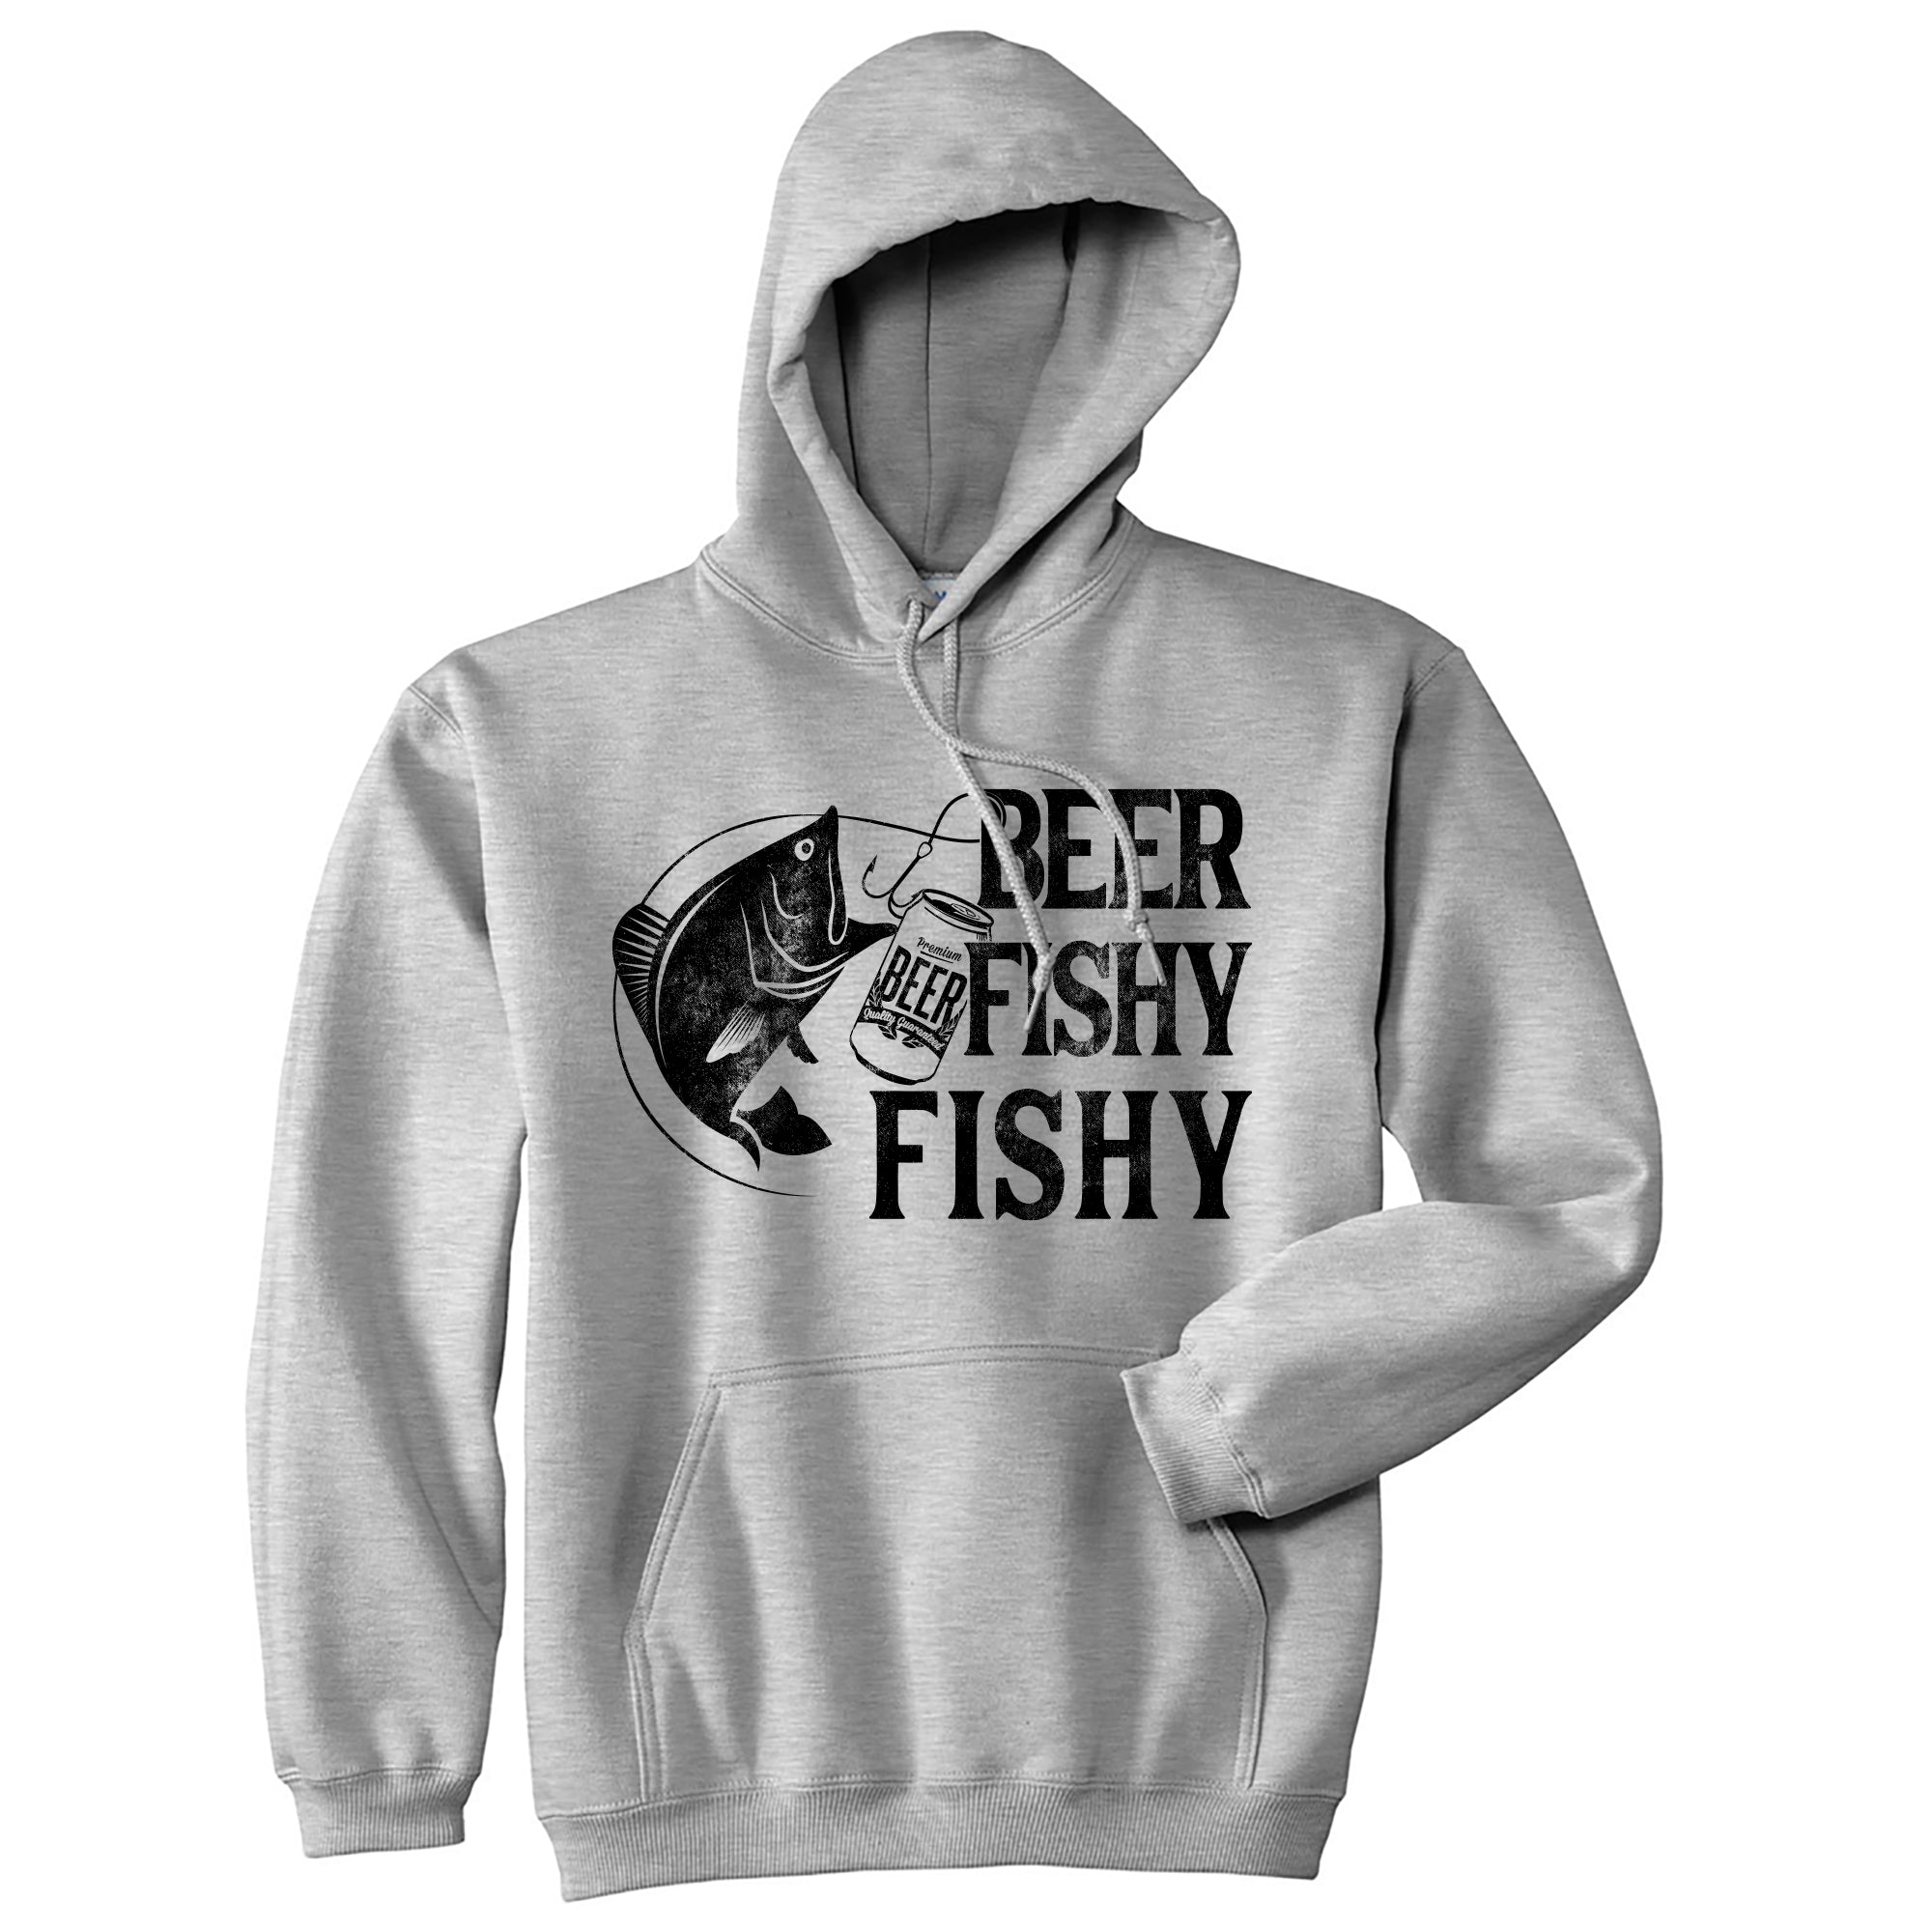 Funny Heather Grey - Beer Fishy Beer Fishy Fishy Hoodie Nerdy Fishing Beer Tee